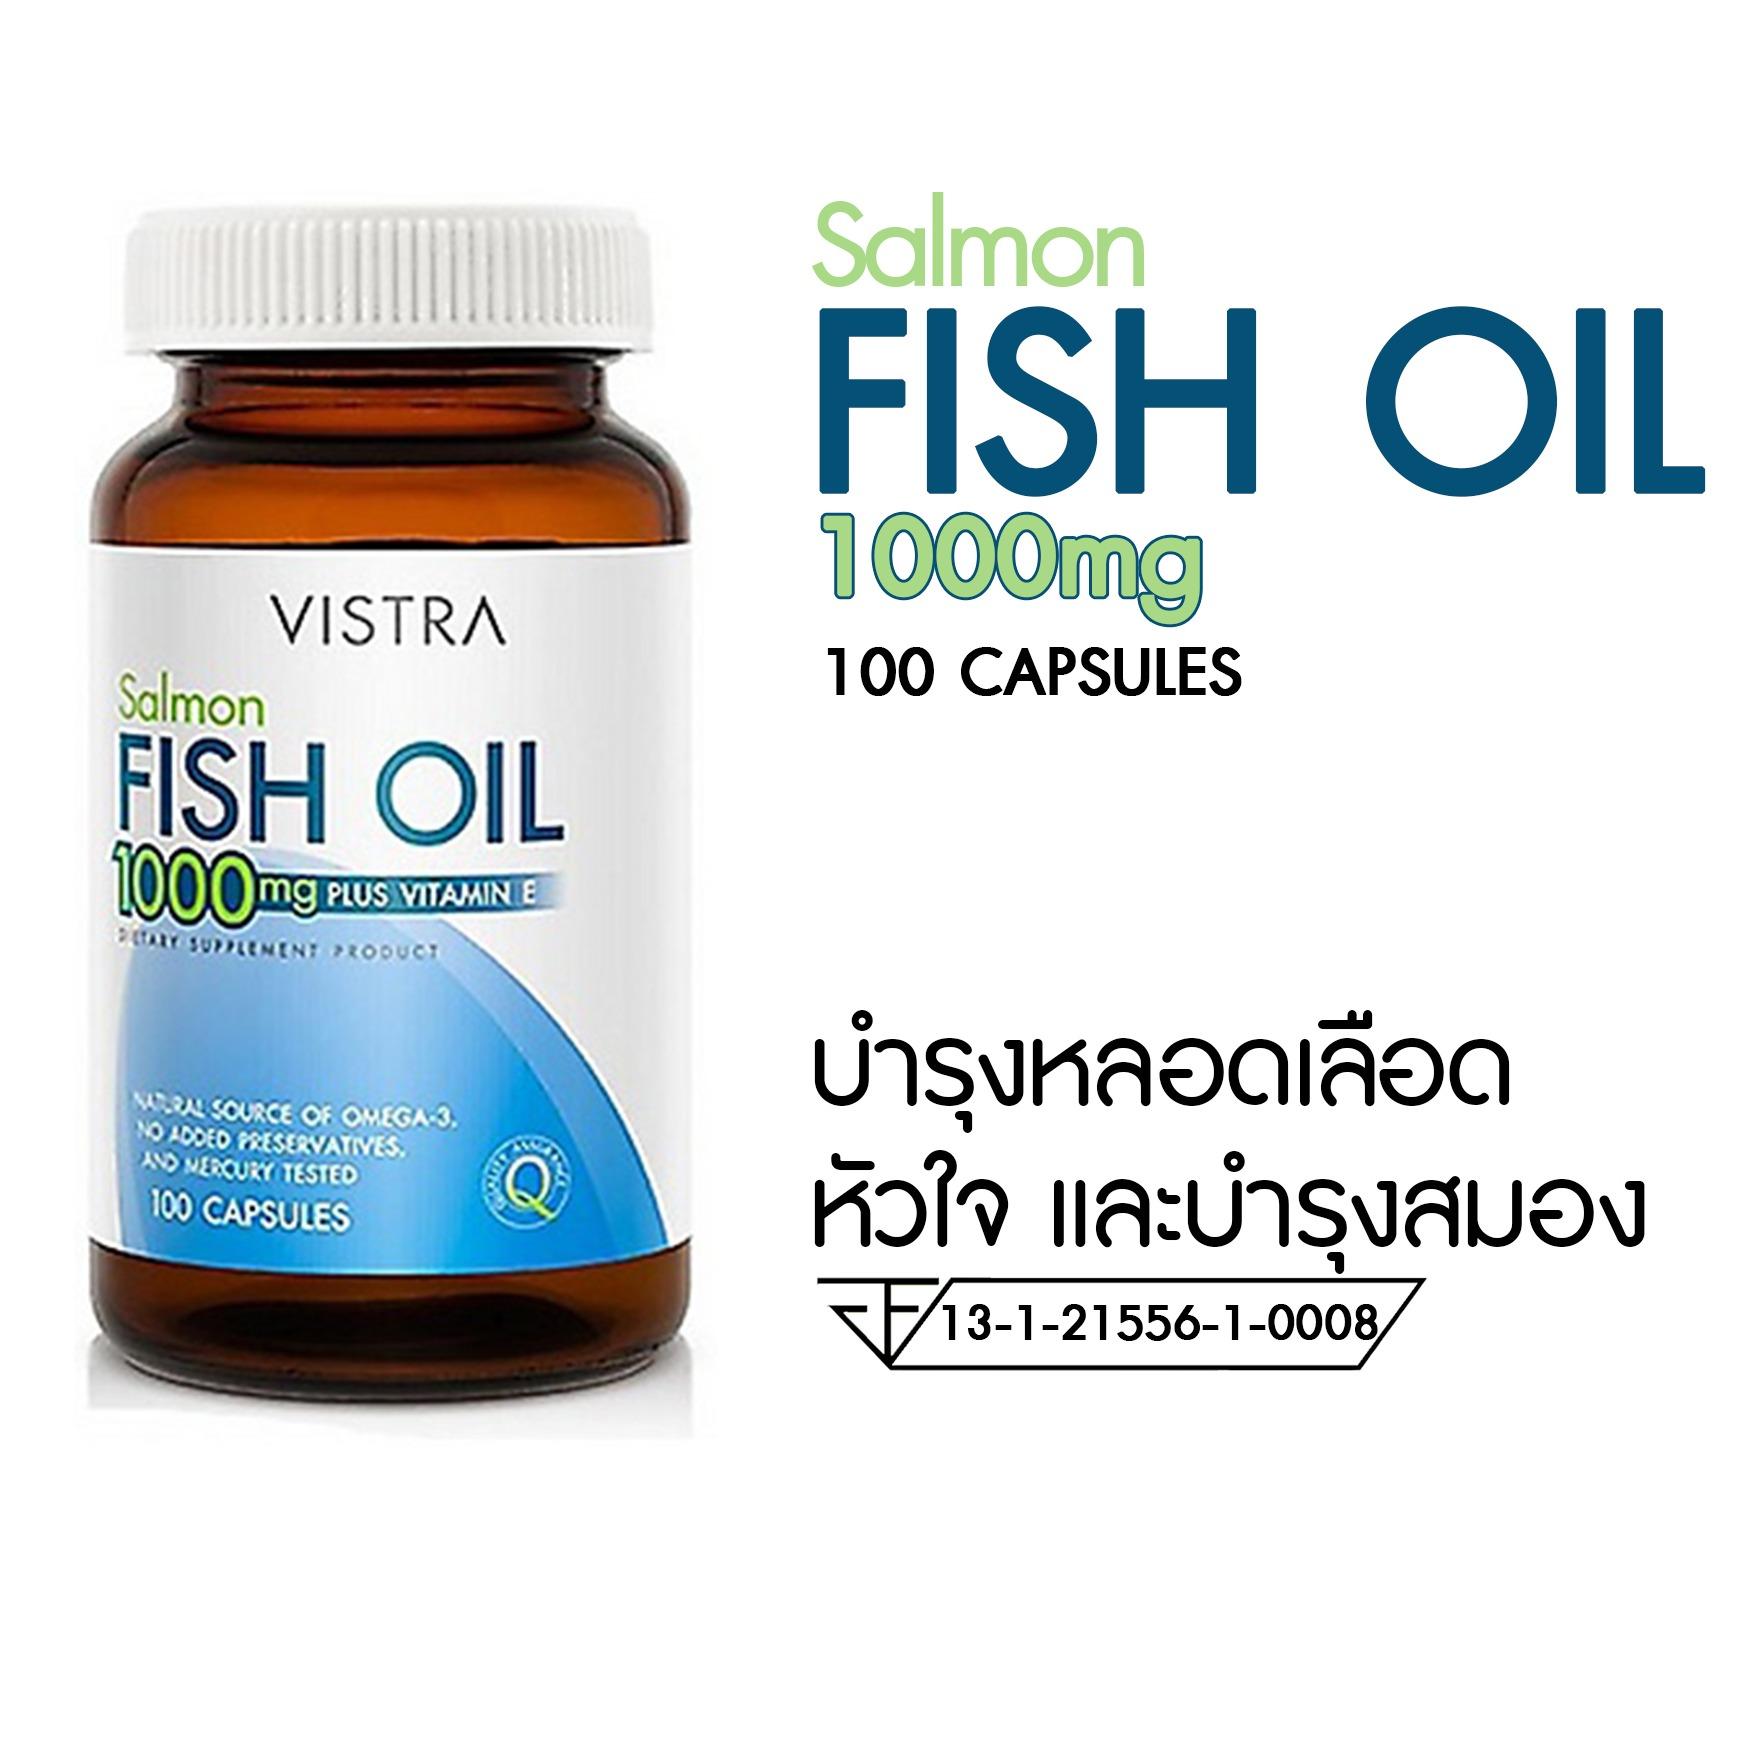 Vistra Salmon Fish Oil 1000 mg Plus Vitamin E น้ำมันปลาแซลมอน เสริมไขมันดี บำรุงร่างกาย เสริมสร้างความจำ 100แคปซูล 1ขวด